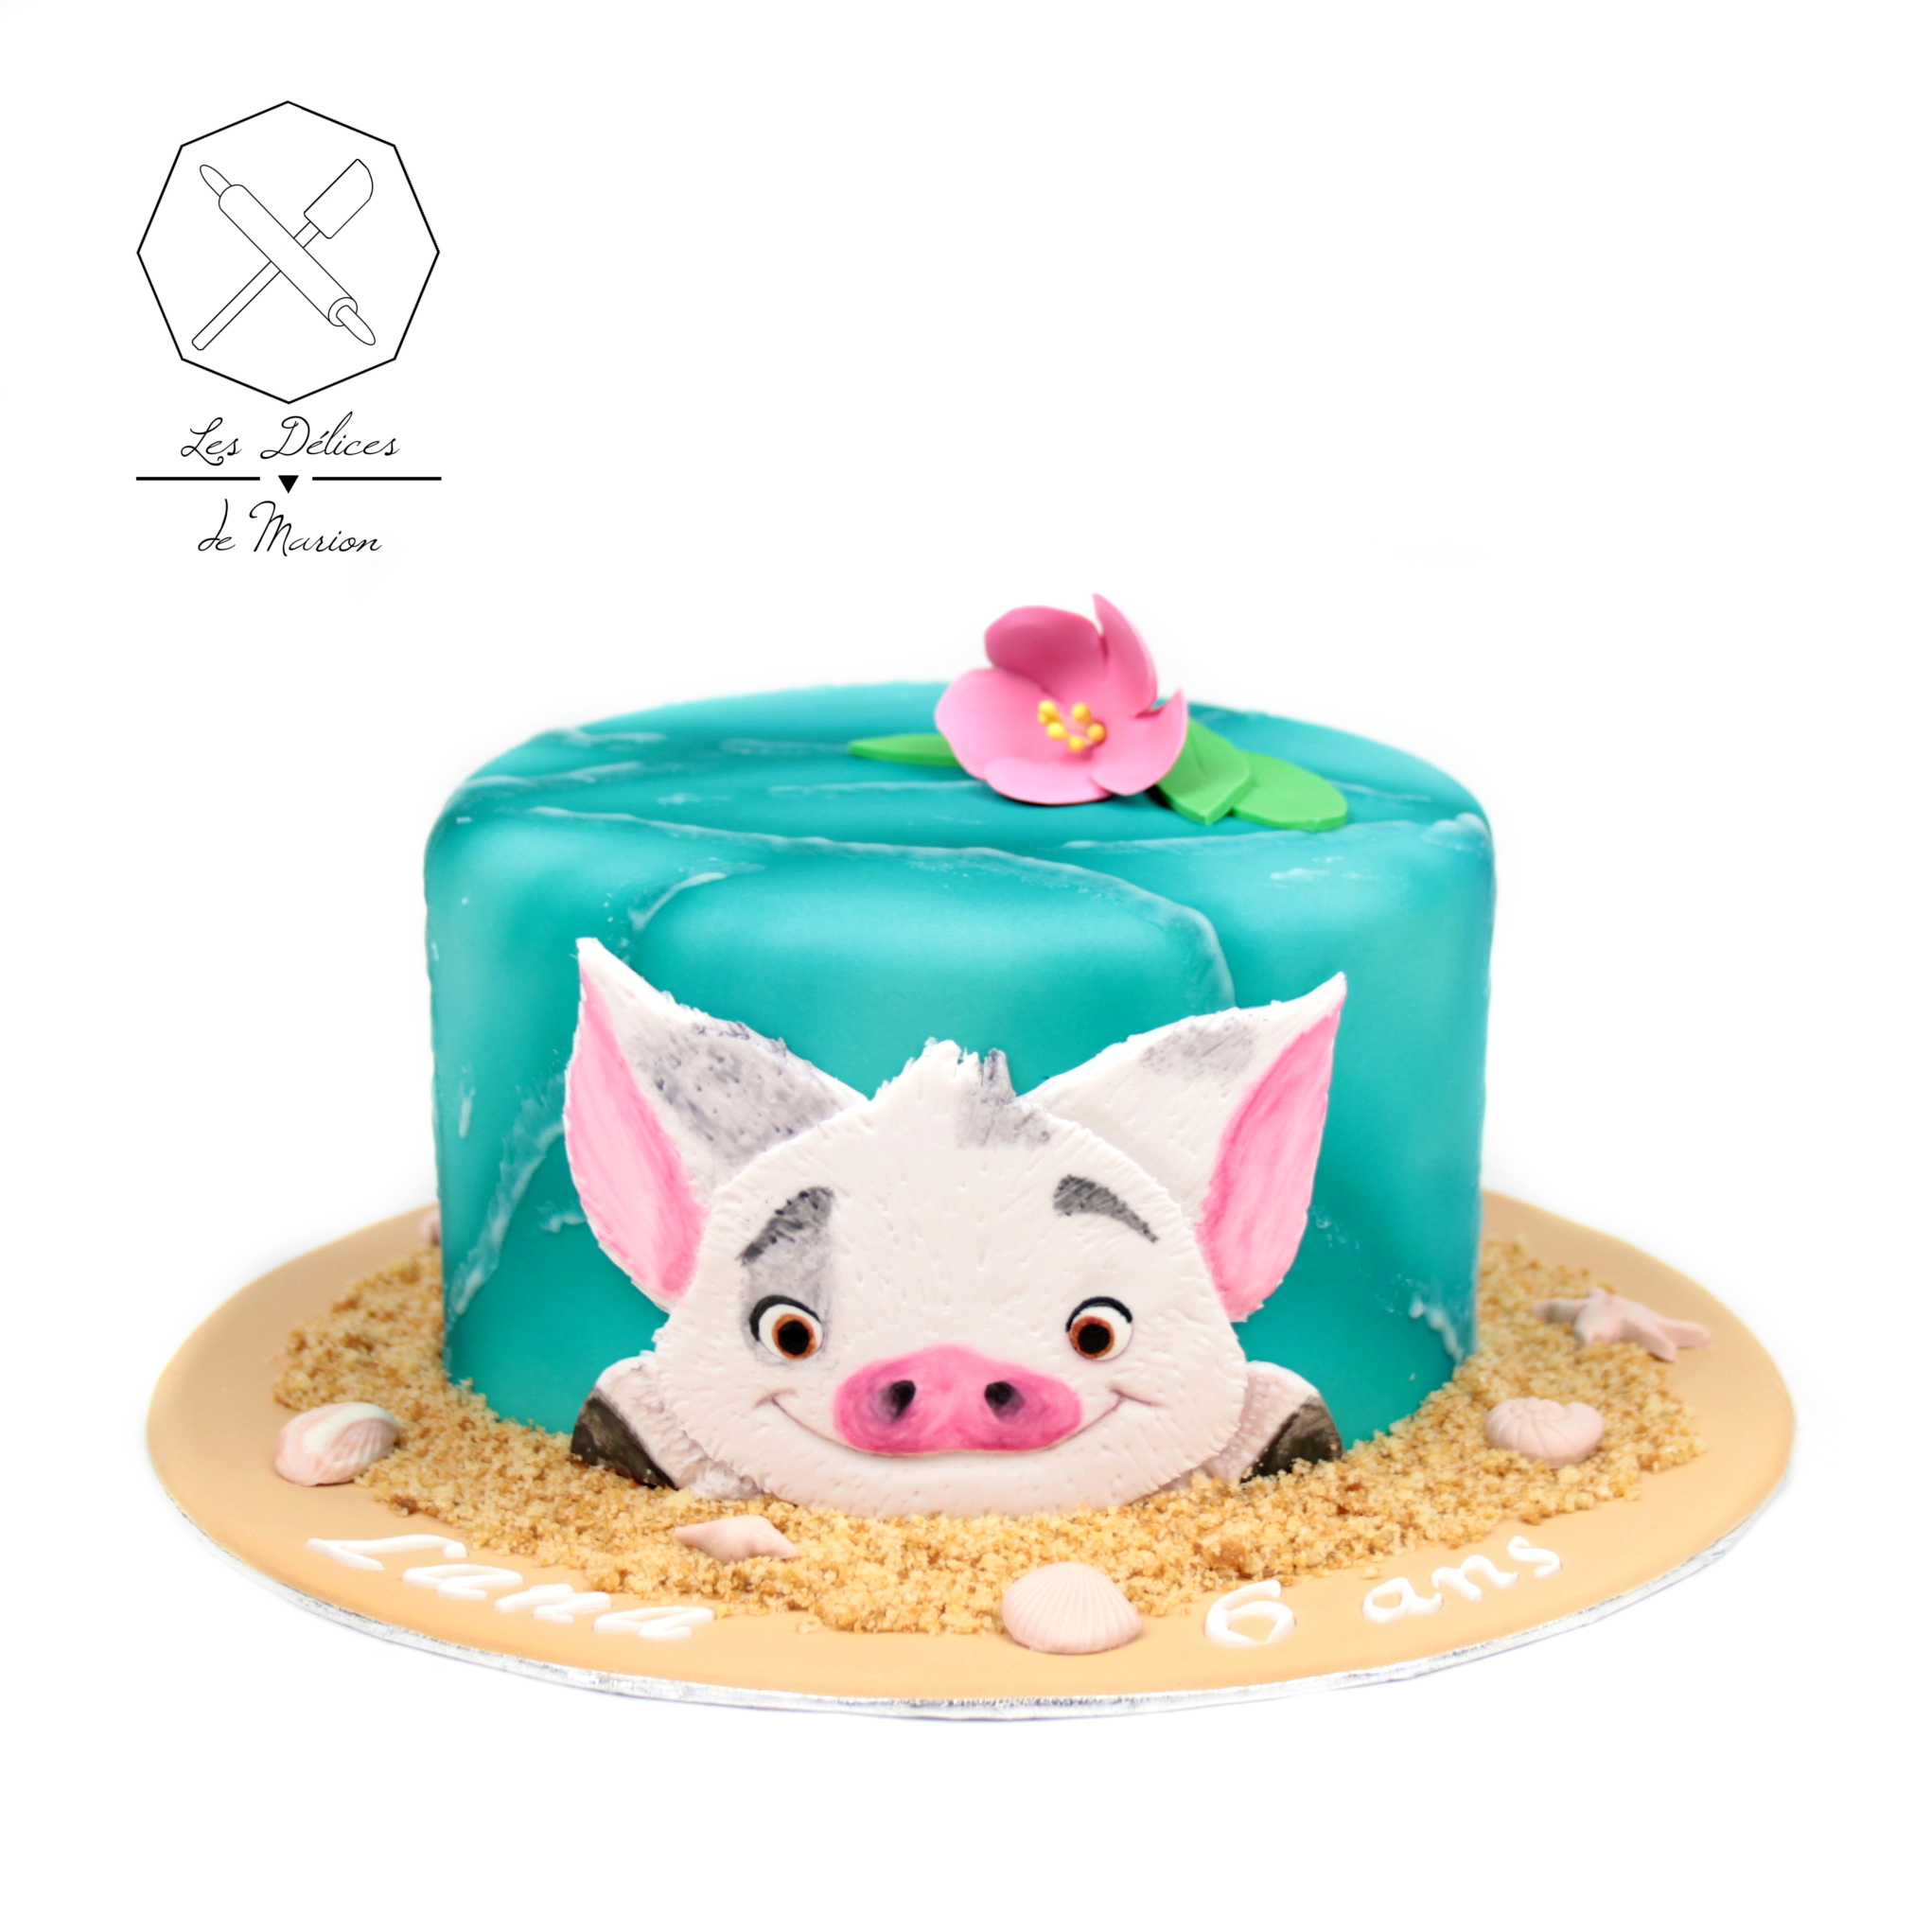 gateau_pua_vaiana_moana_pig_cake-design_delices-marion